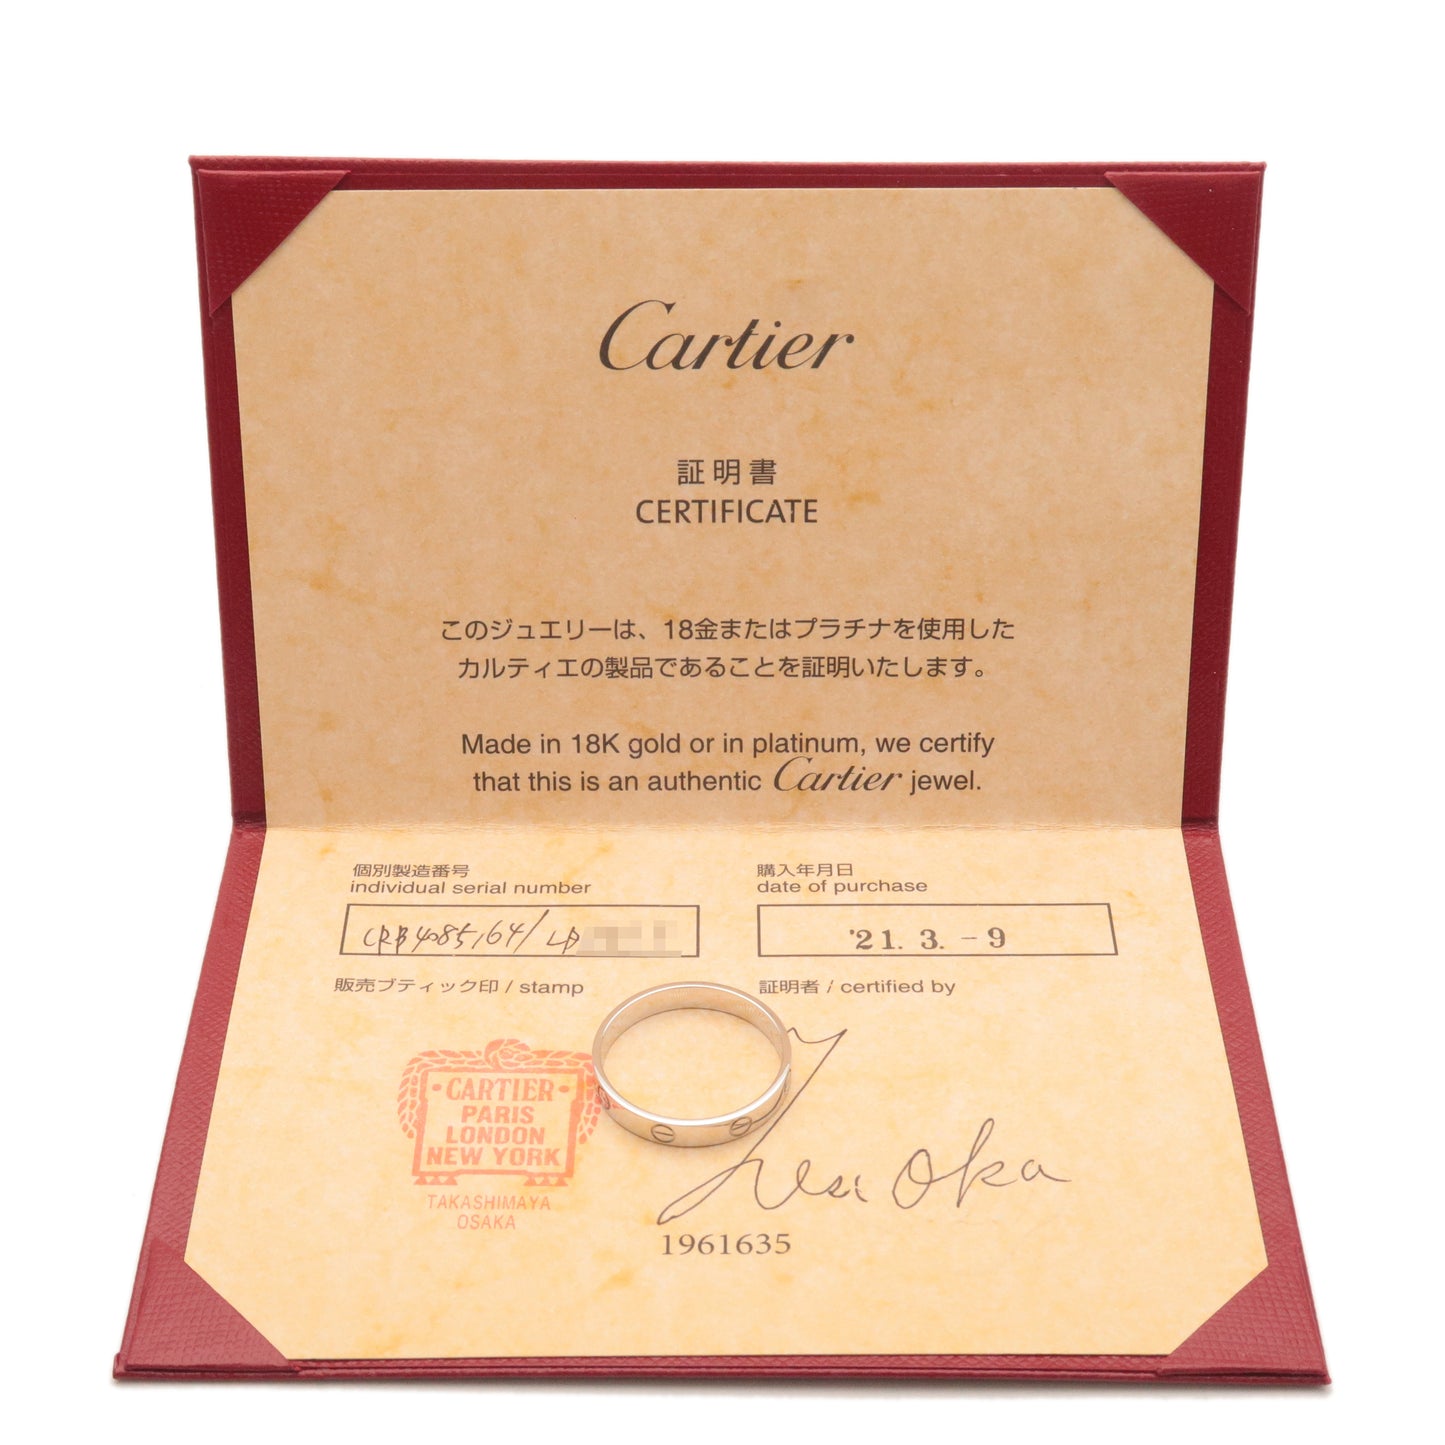 Cartier Mini Love Ring K18WG 750WG White Gold #64 US10.5-11